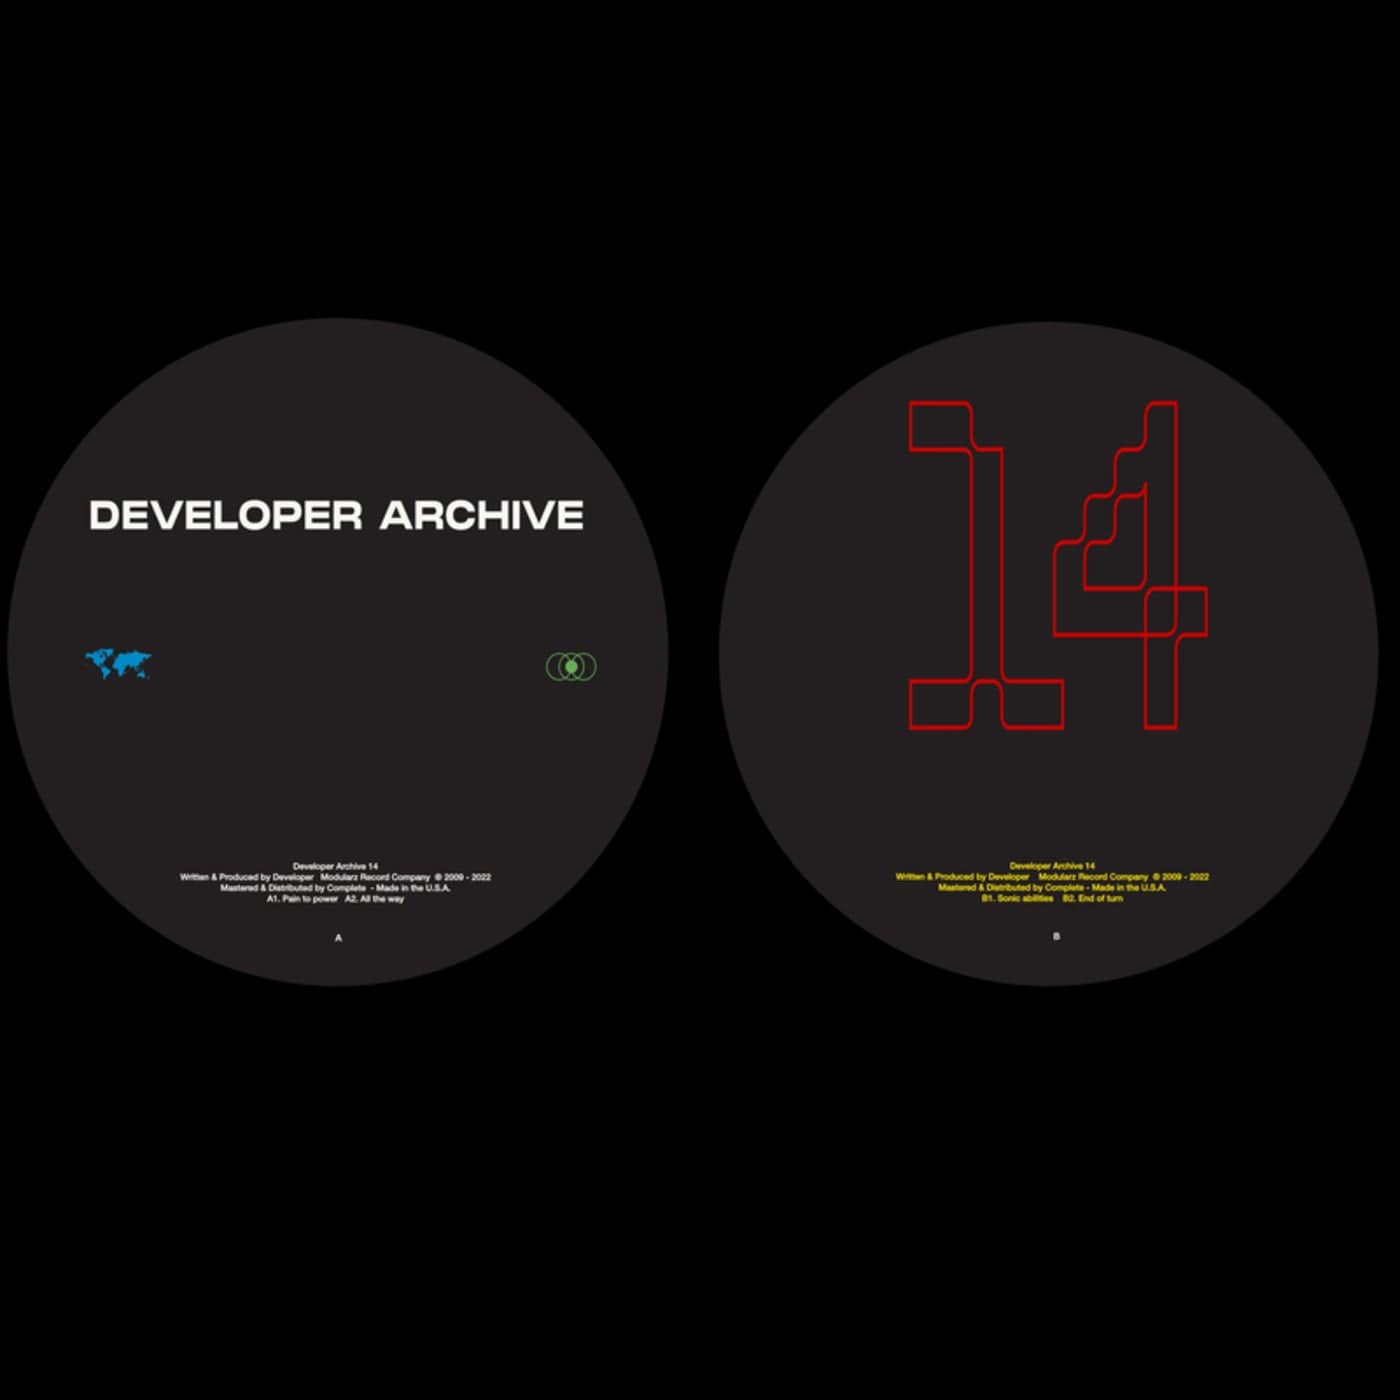 image cover: Developer - Developer Archive 14 / DA14